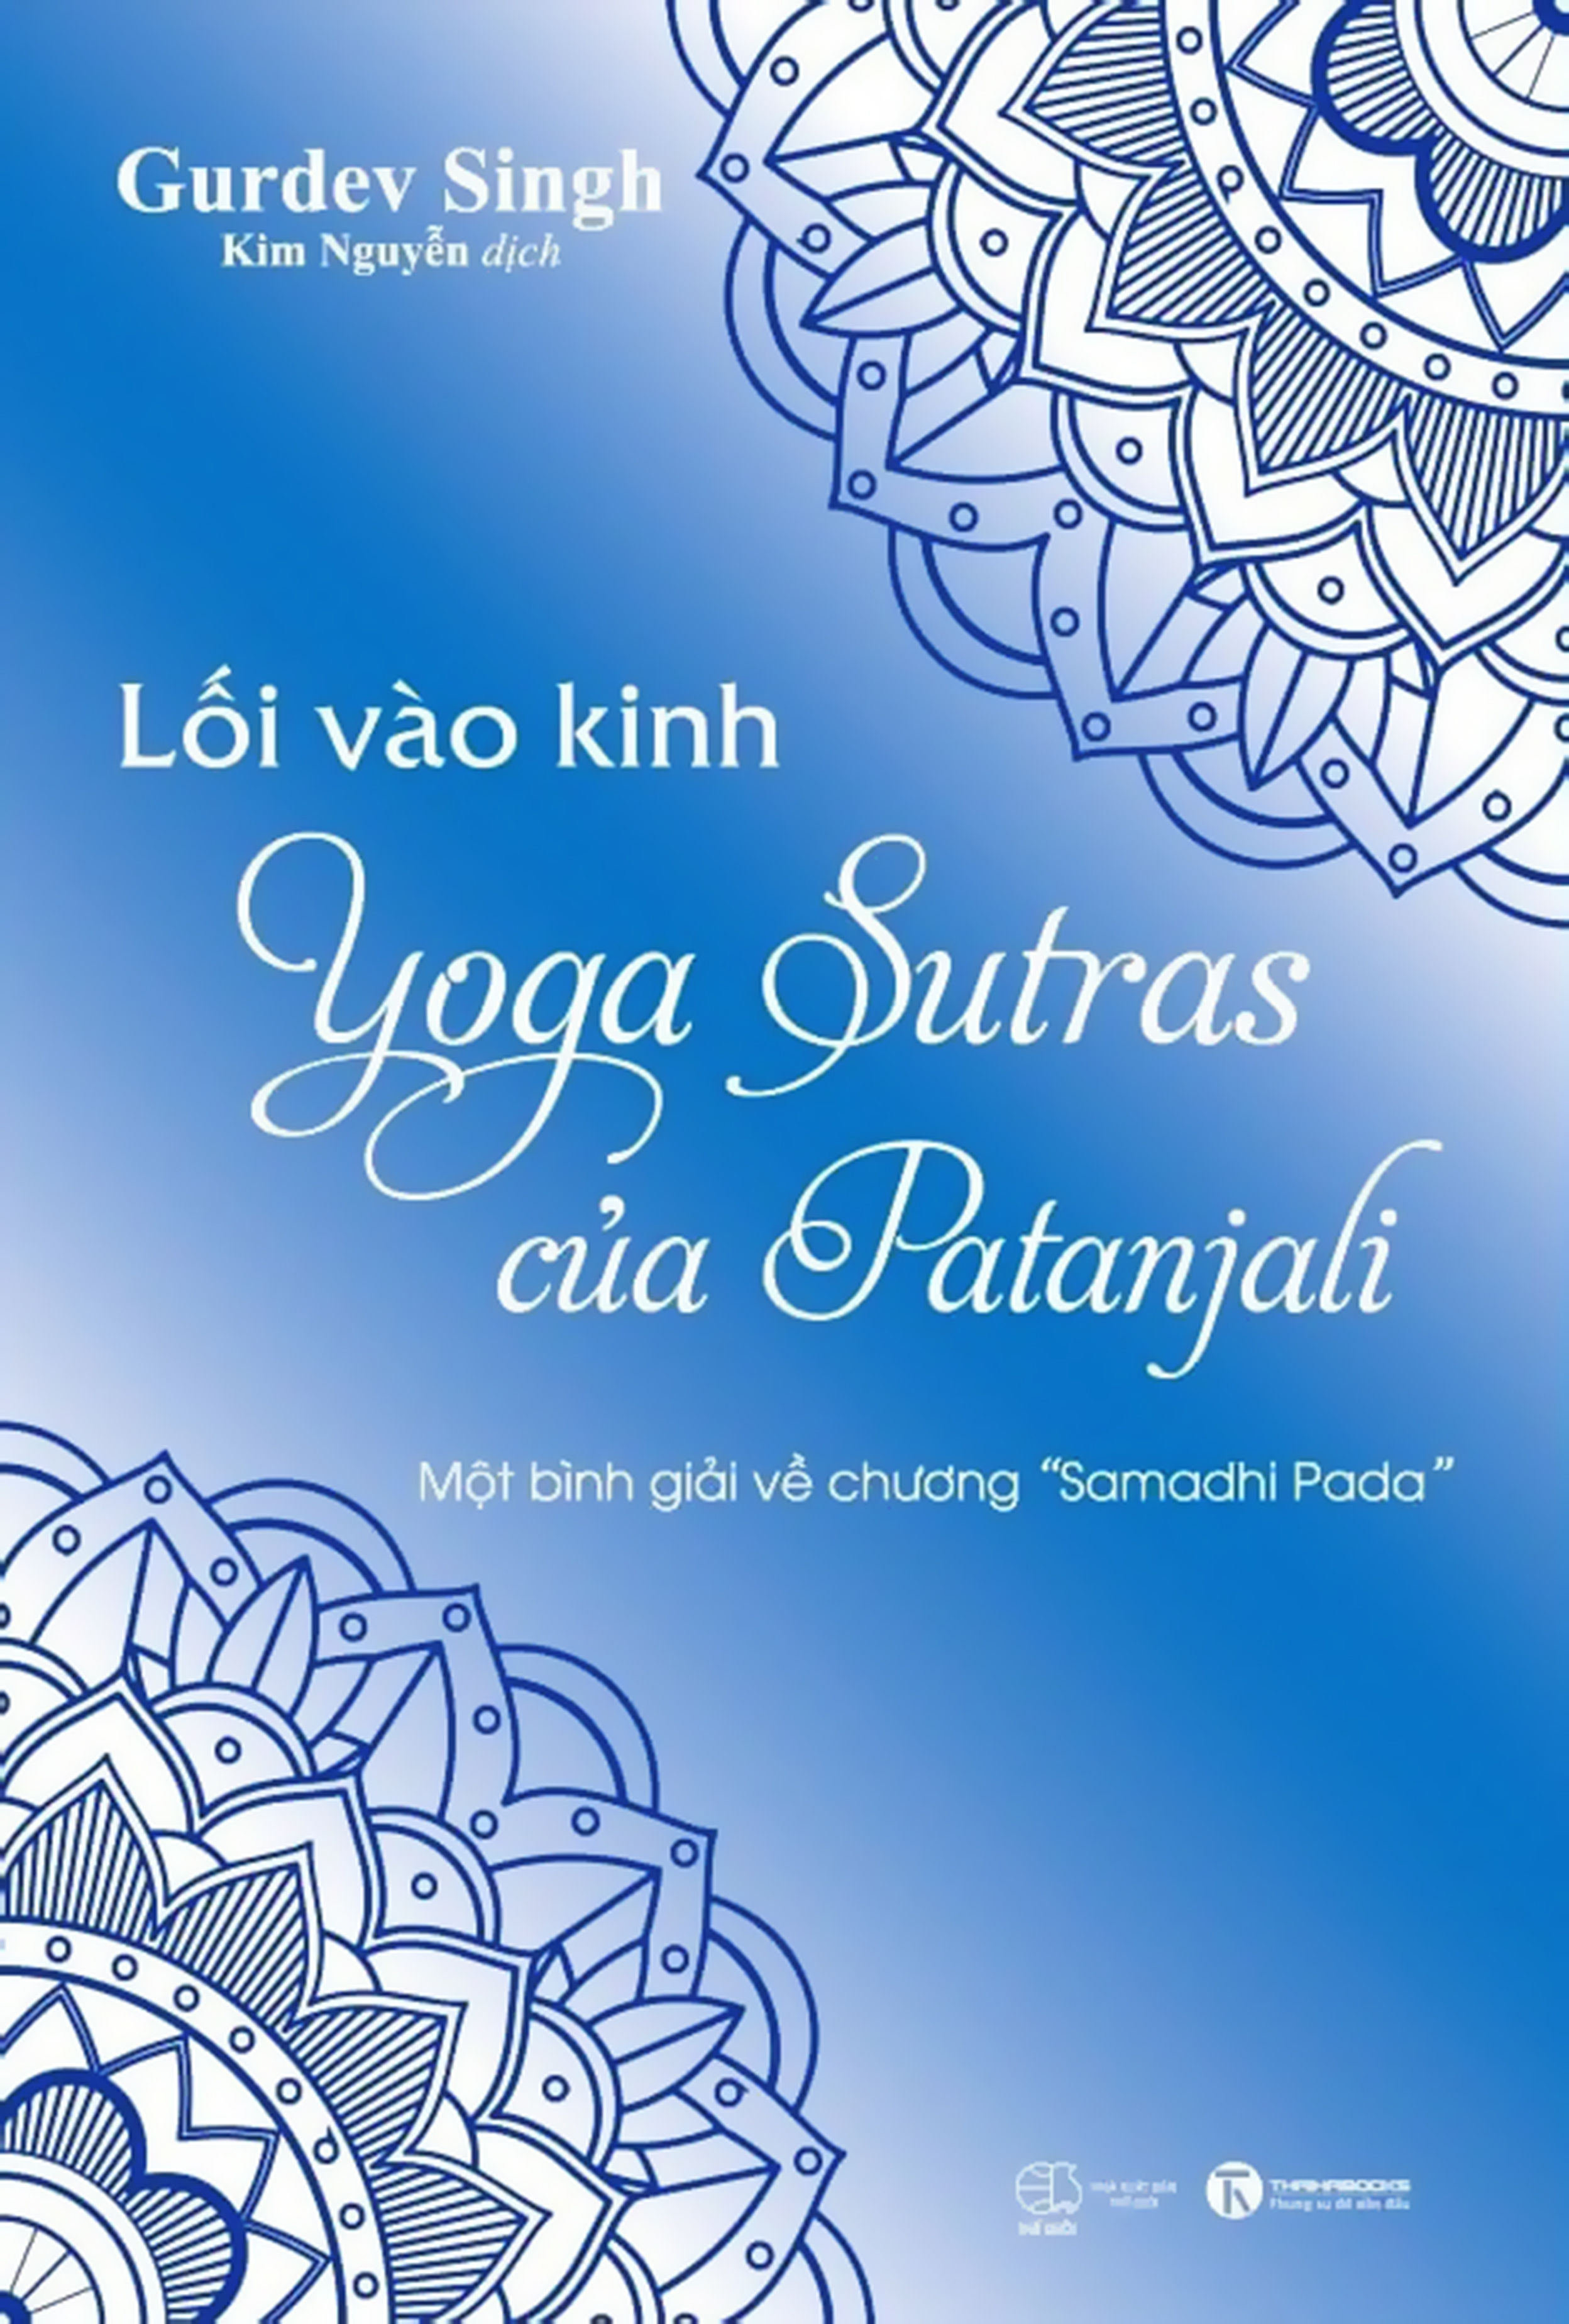 Lối Vào Kinh Yoga Sutras Của Patanjali - Một Bình Giải Về Chương “Samadhi Pada” ebook PDF-EPUB-AWZ3-PRC-MOBI